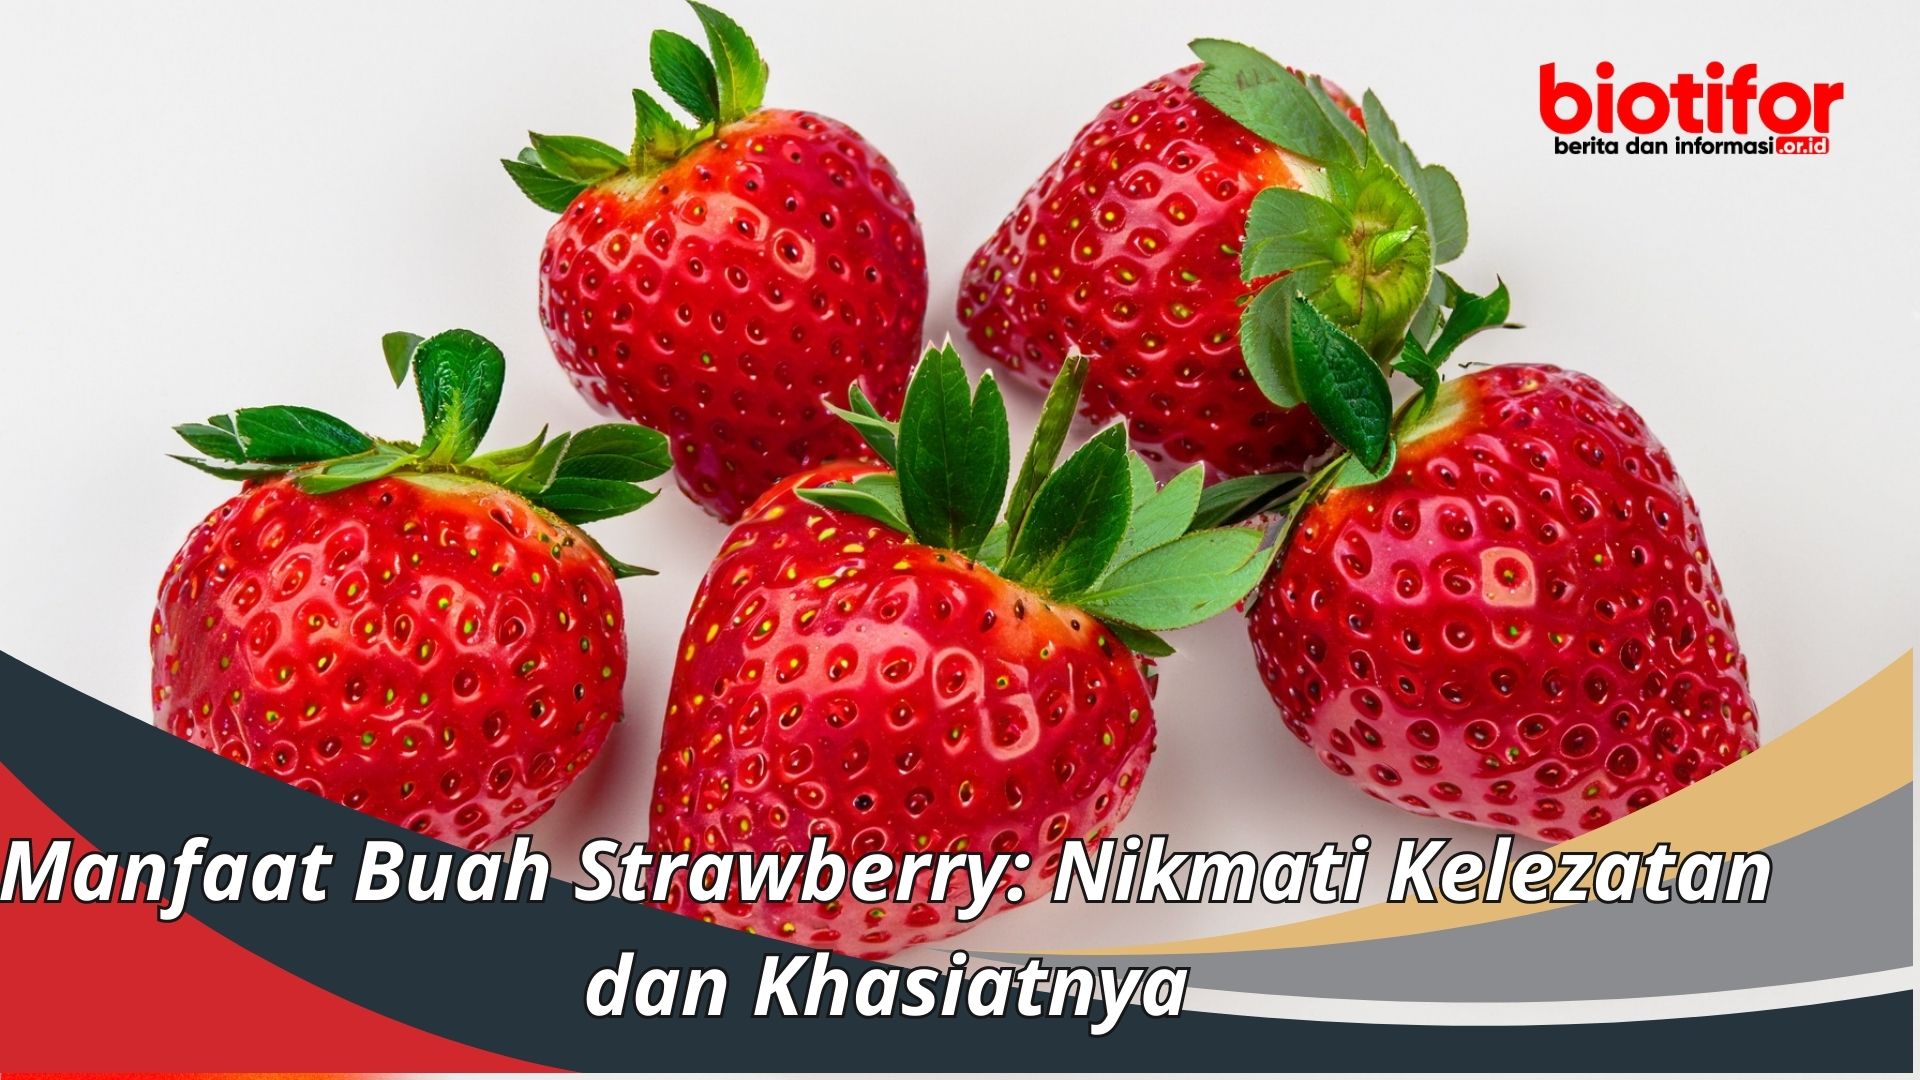 Manfaat Buah Strawberry: Nikmati Kelezatan dan Khasiatnya